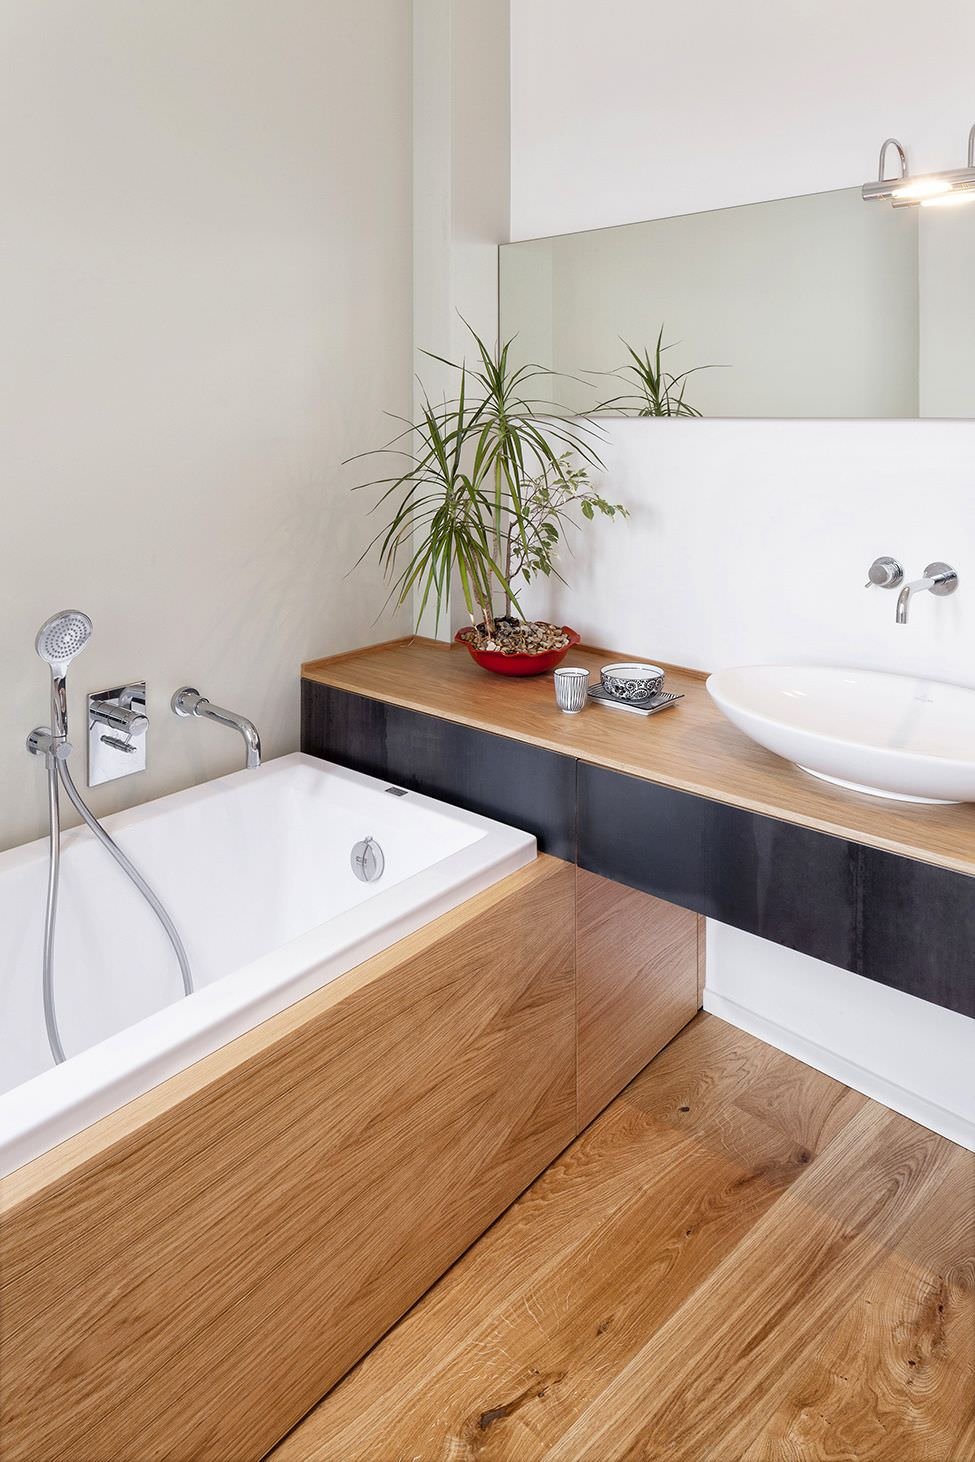 Immagine stanza da bagno di dimensioni ridotte con vasca. Il legno dei pavimenti, del top del mobile su cui appoggia il lavabo e del rivestimento vasca viene abbinato ai colori bianco e nero.